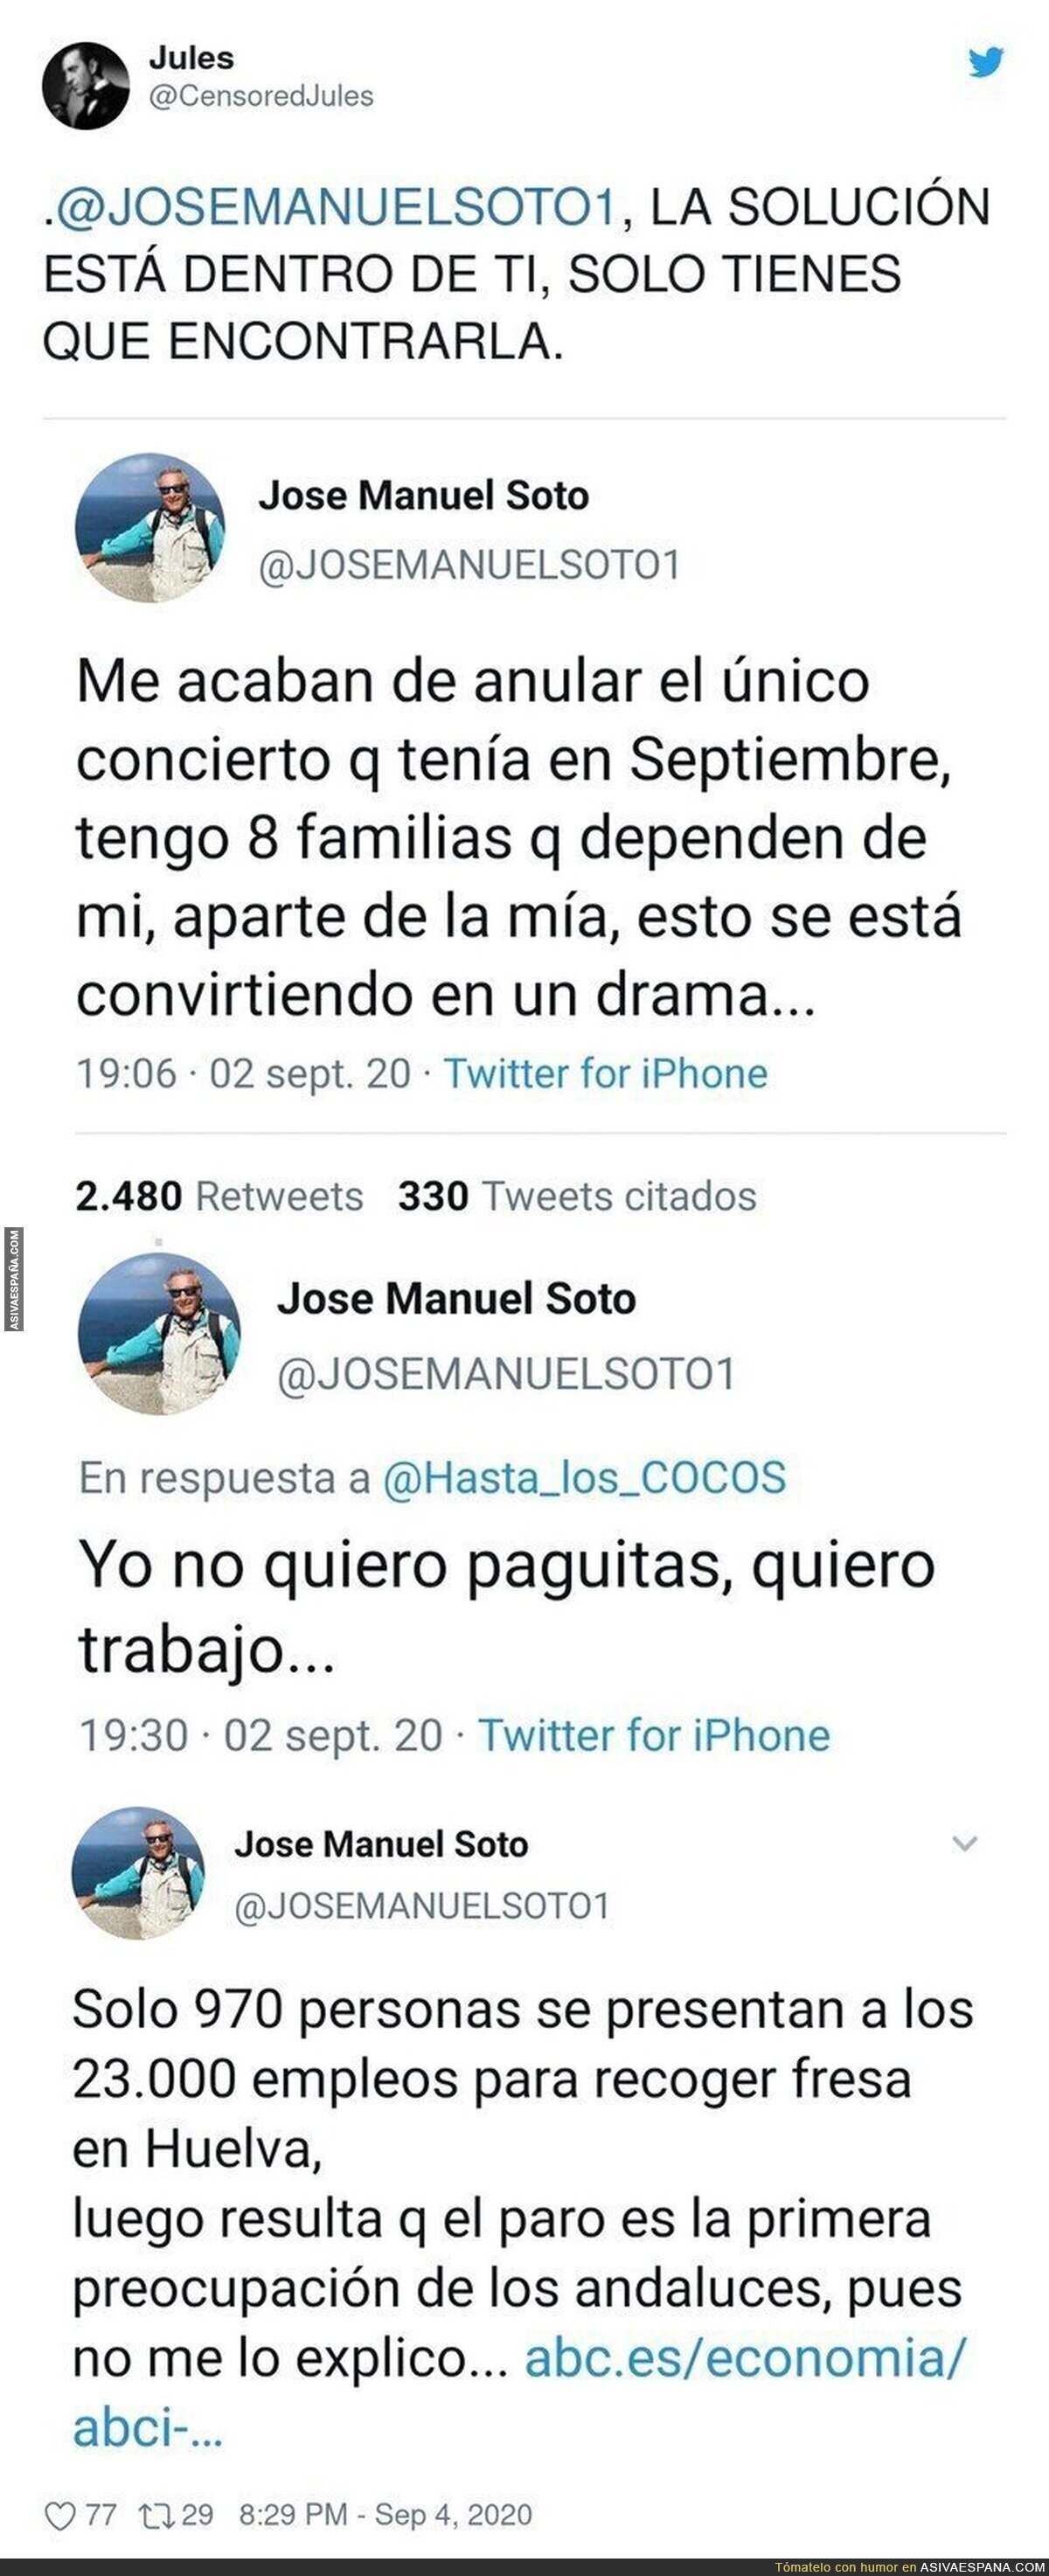 José Manuel Soto si no trabaja es porque no quiere